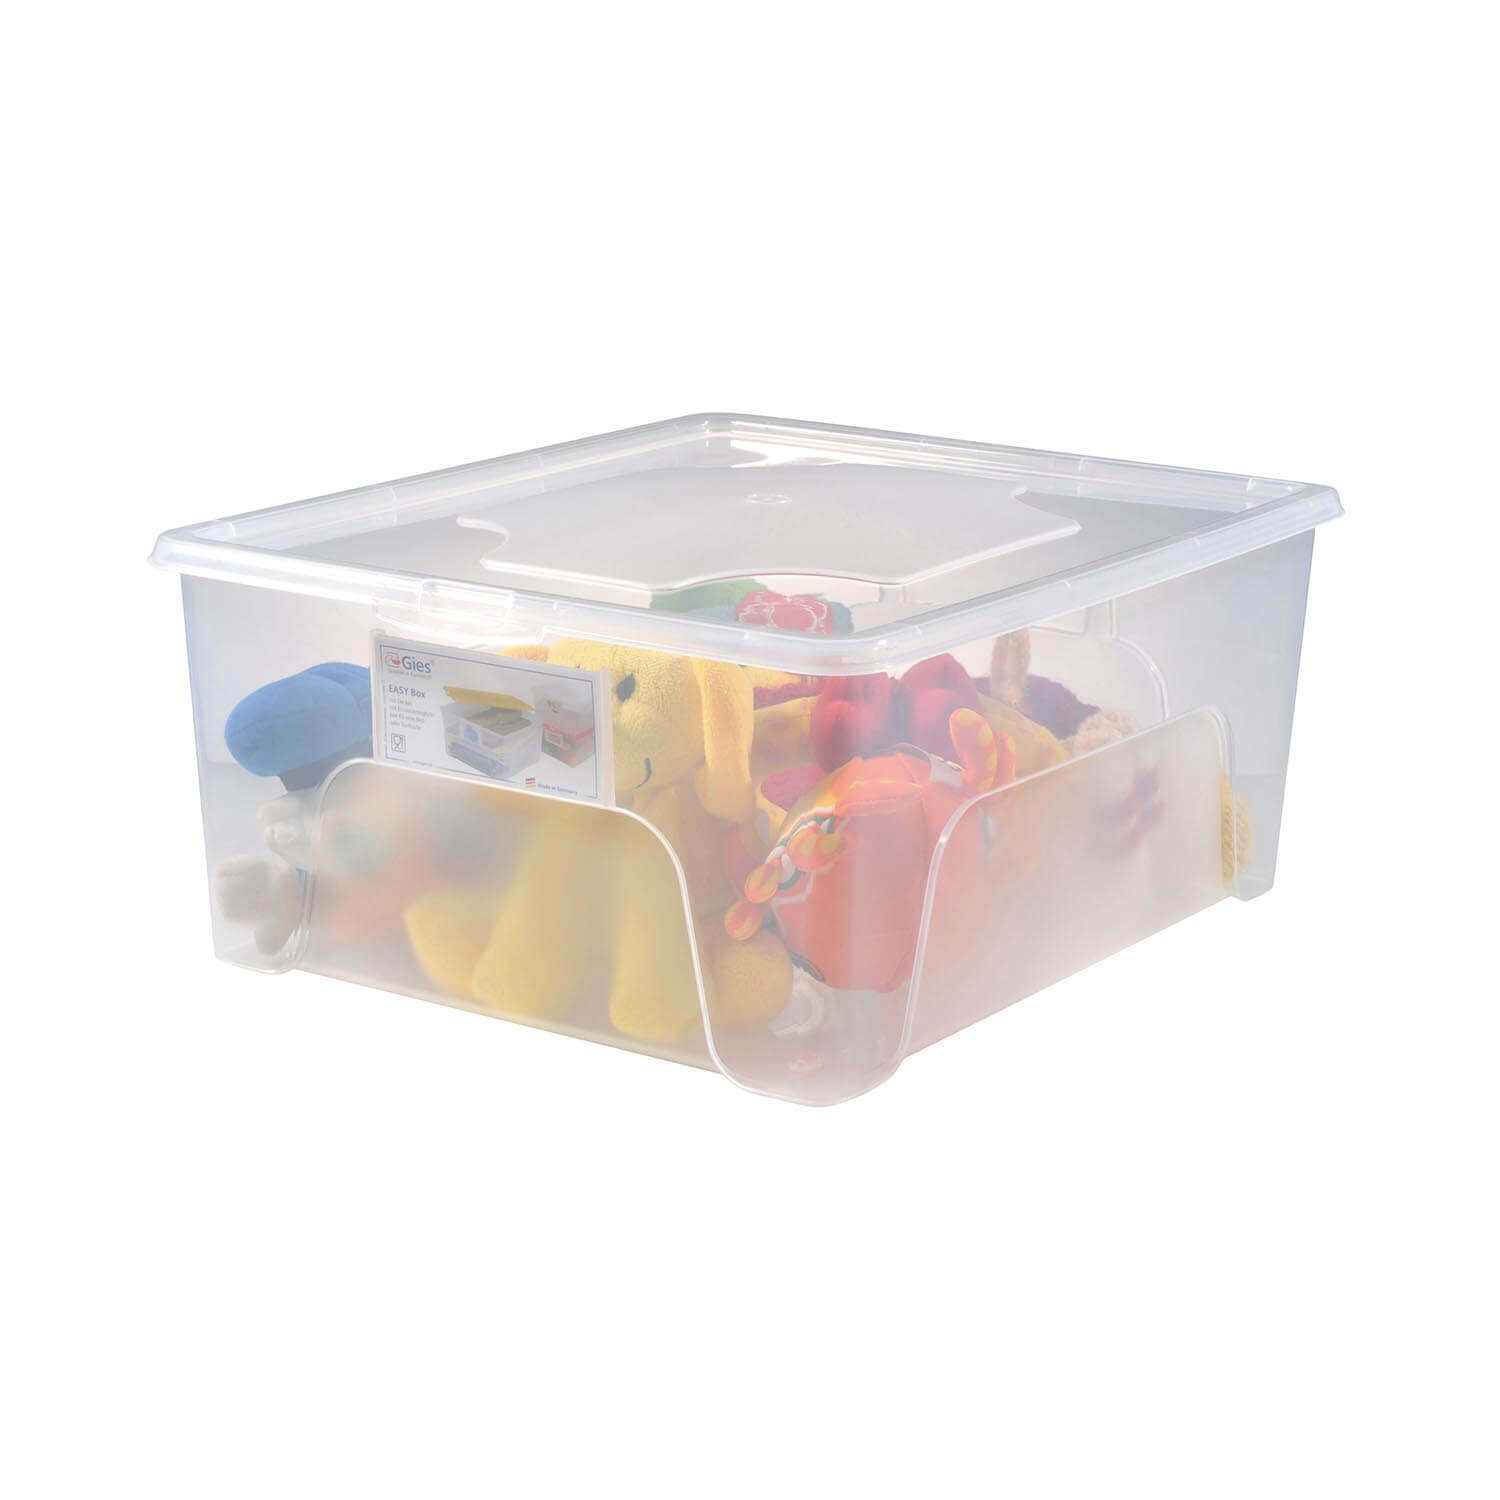 Aufbewahrungsbox "Easybox" 18 L in transparent, Kunststoffbox